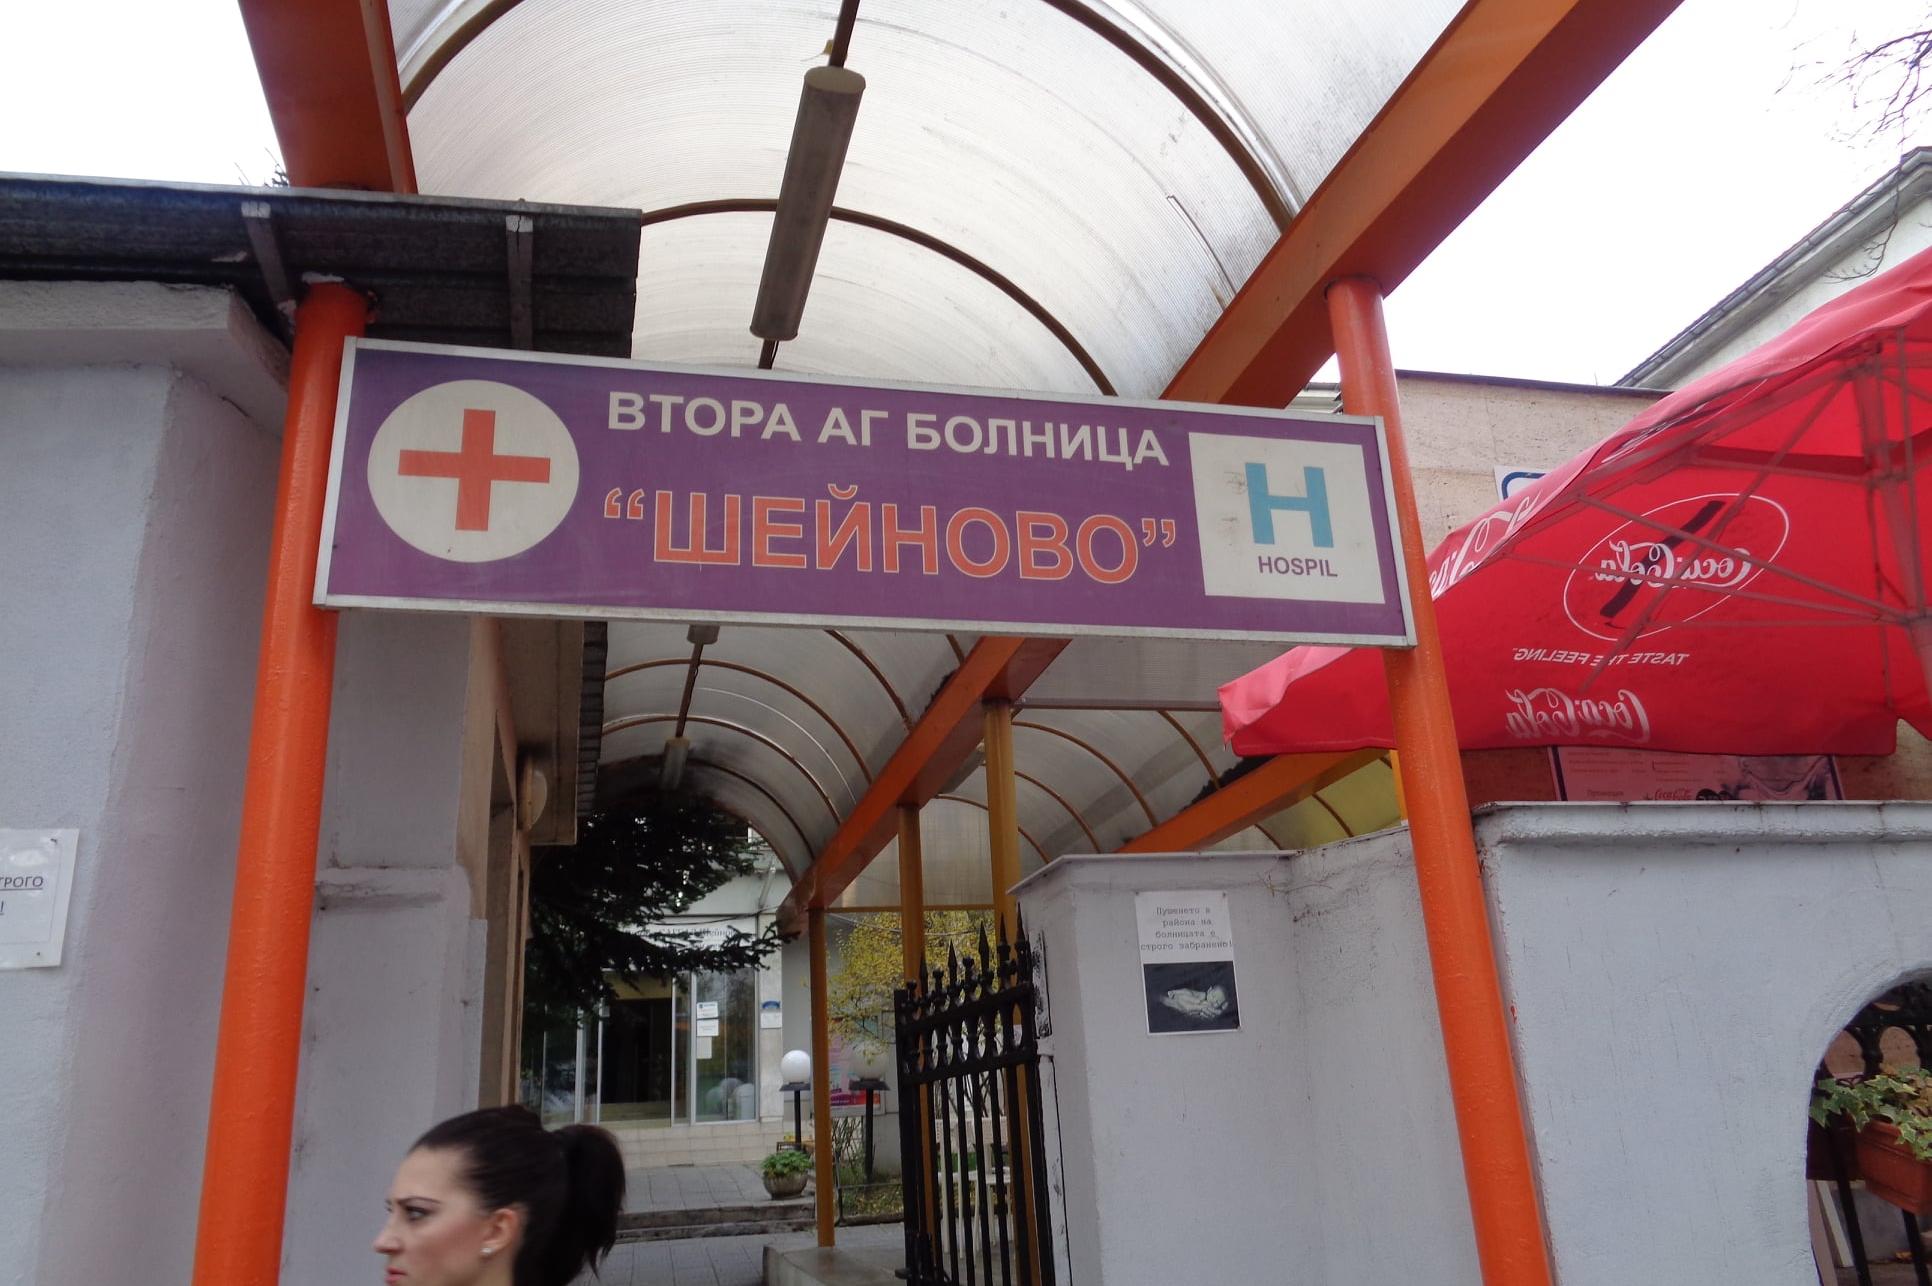 Втора АГ болница "Шейново" ще прави безплатни прегледи за ендометриоза